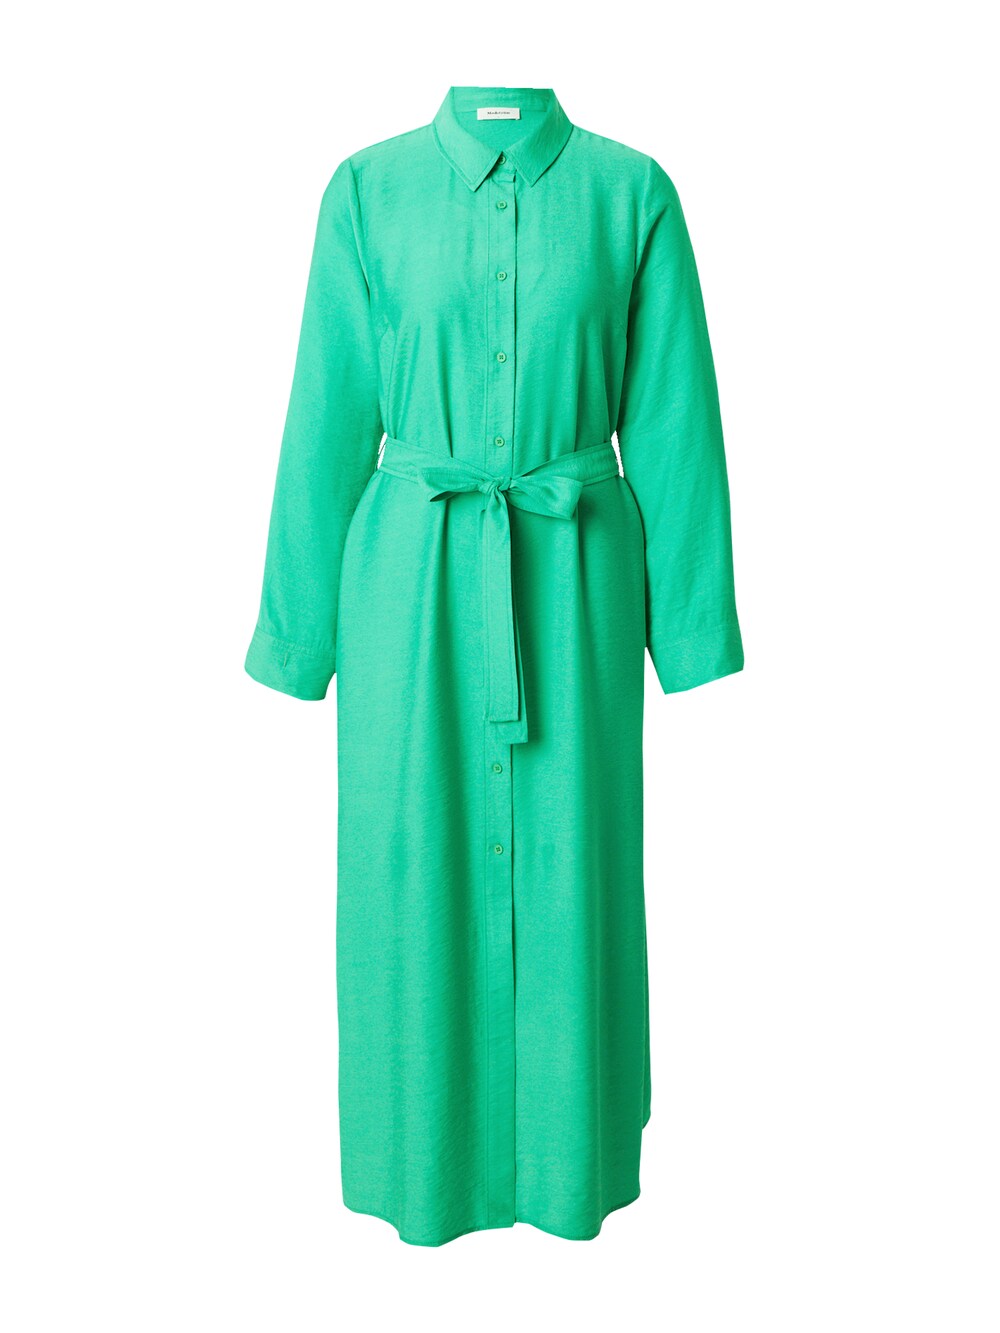 Рубашка-платье Modström Fisher, трава зеленая флуоресцентная лампа большая ветка сосны куст зеленая трава цветок строительные кирпичи 2417 2423 4727 6255 30176